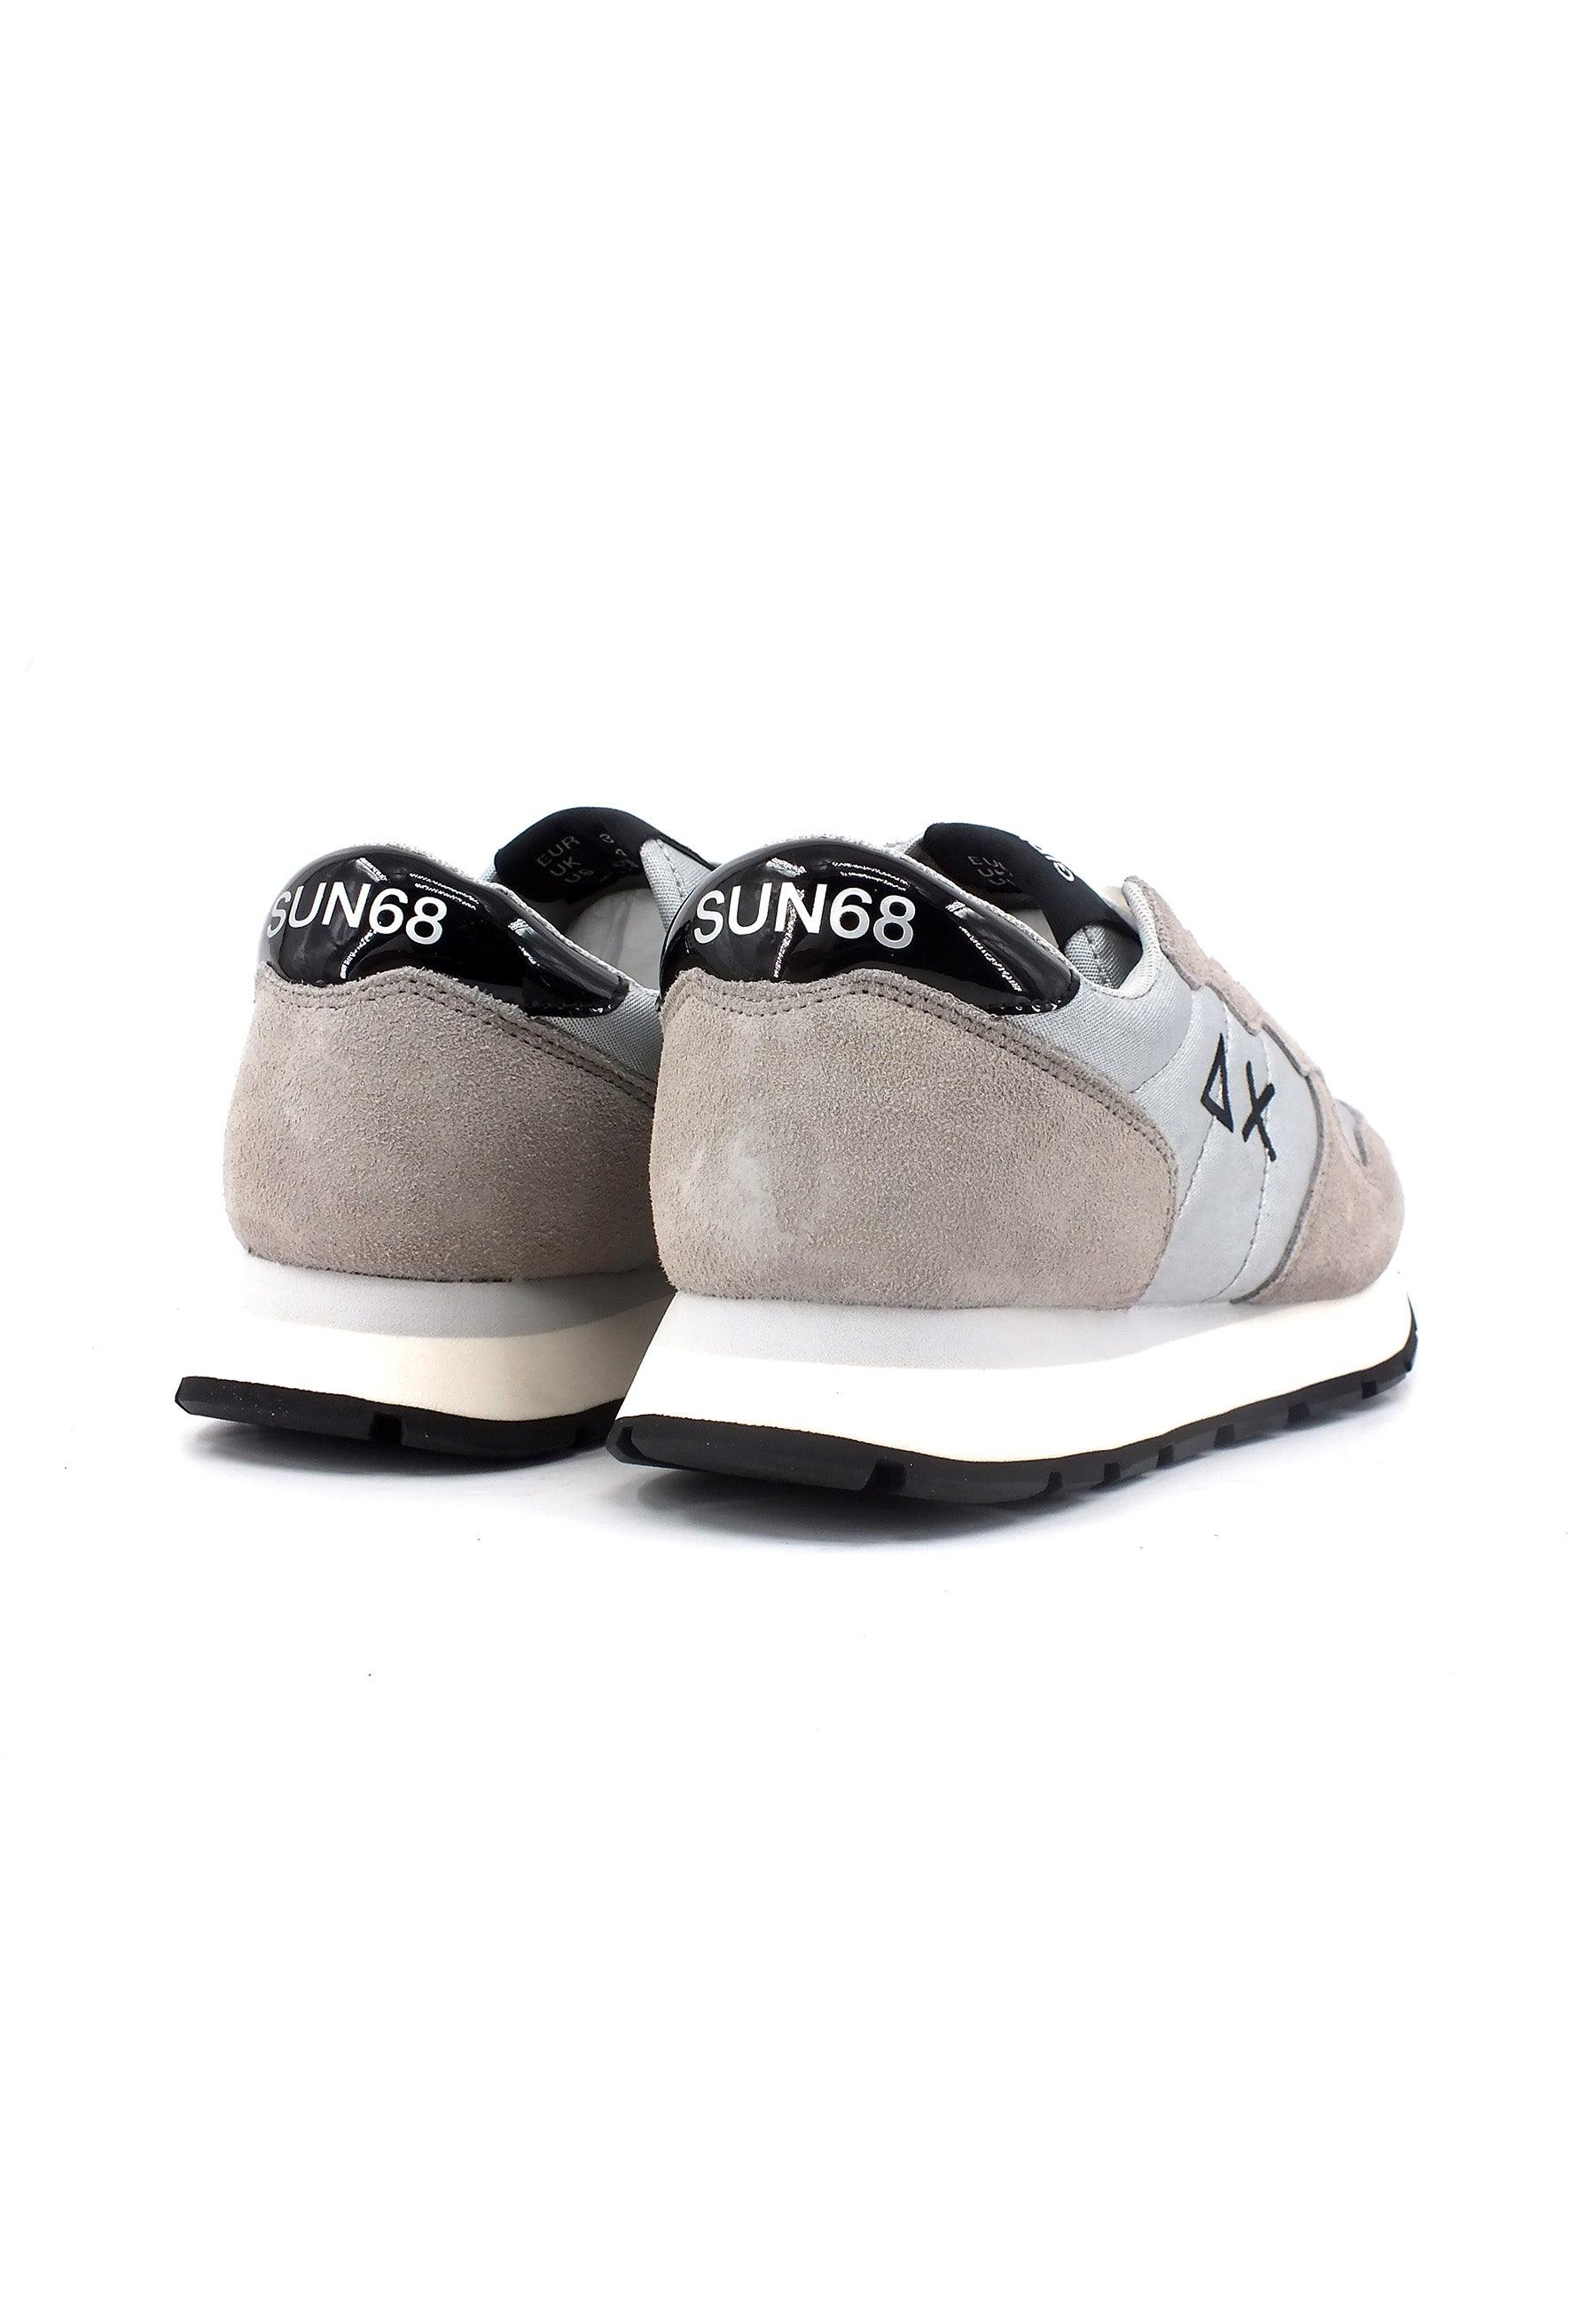 SUN68 Ally Bright Sneaker Donna Argento Z43203 - Sandrini Calzature e Abbigliamento